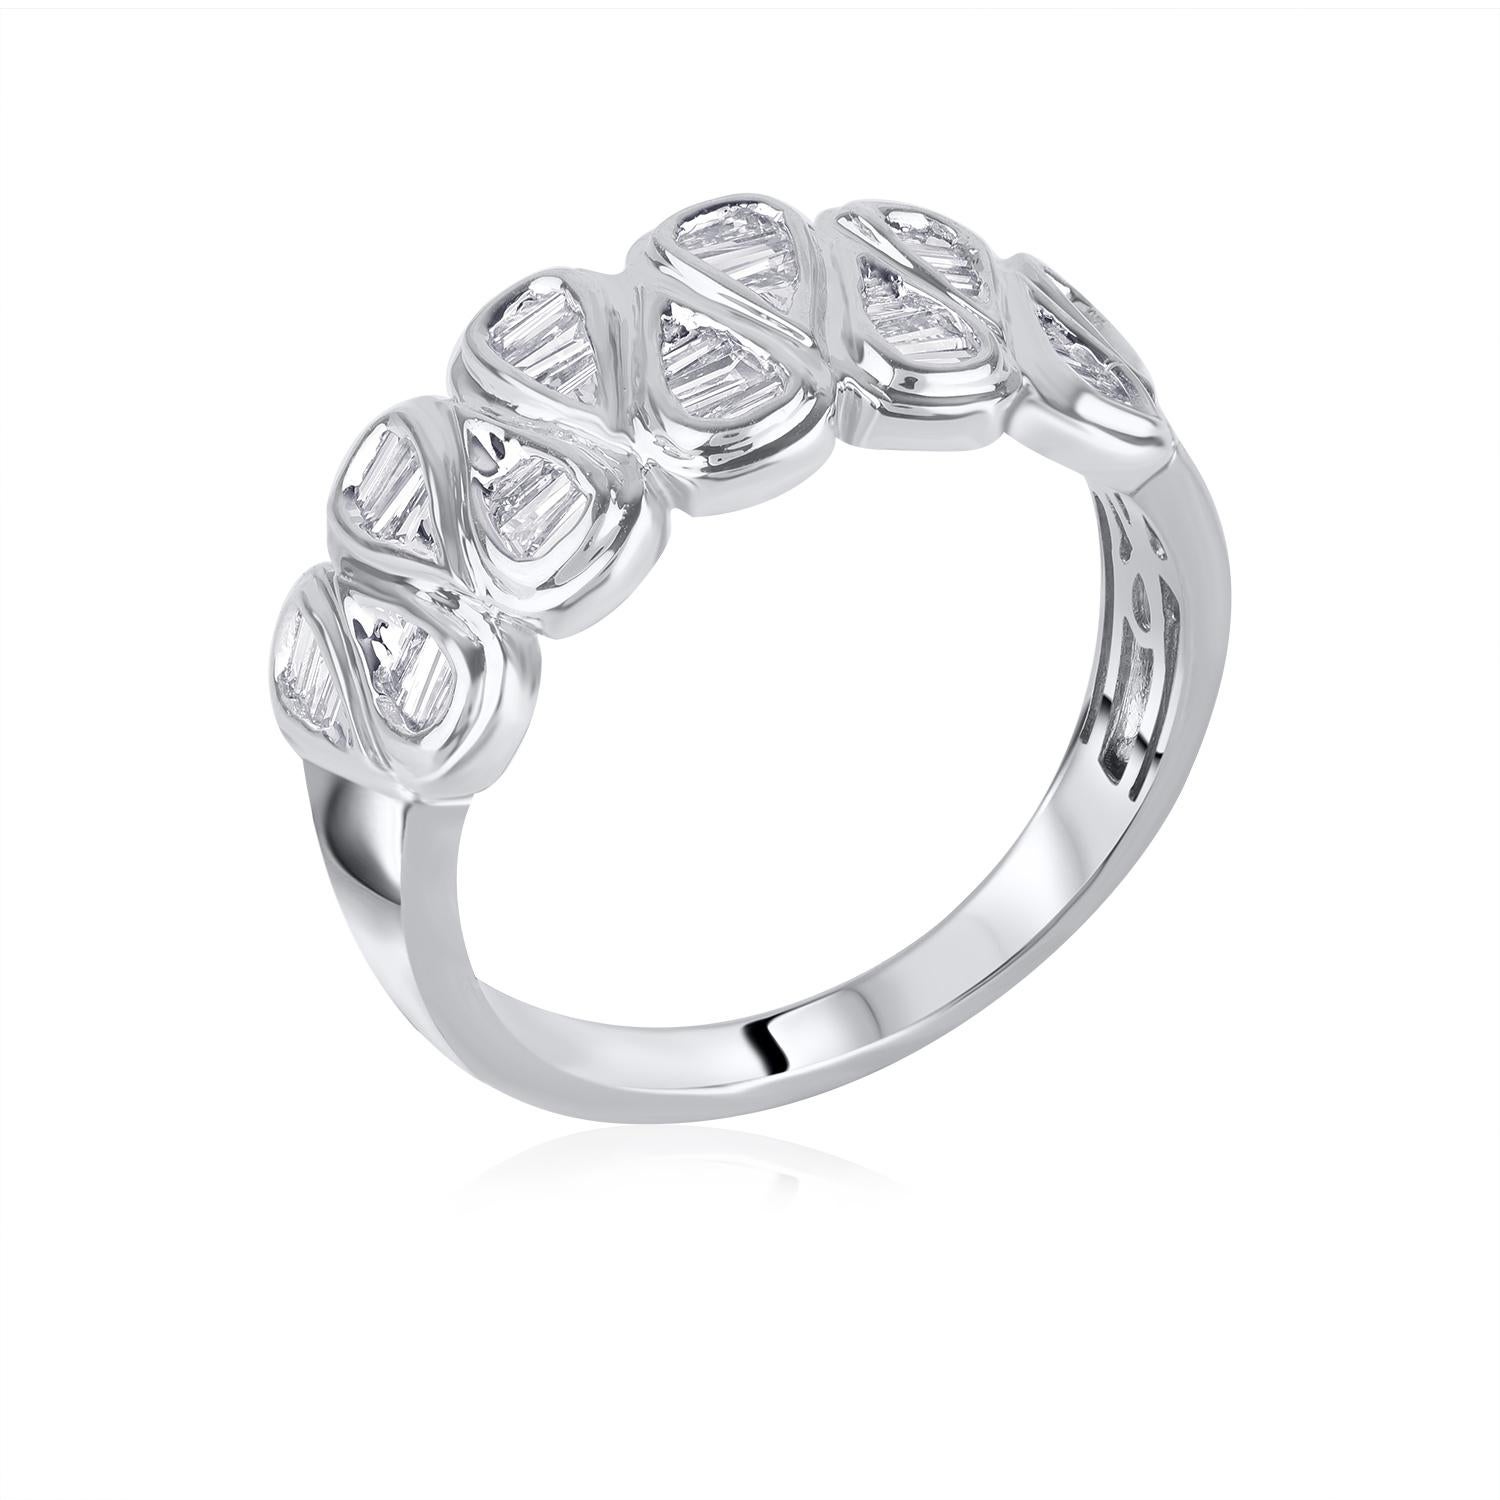 Ehren Sie Ihren besonderen Tag mit diesem außergewöhnlichen Diamantring. Dieser Ring ist mit 33 funkelnden Diamanten im Brillantschliff in einer schönen Kanalfassung besetzt. Das Gesamtgewicht der Diamanten beträgt 0,75 Karat. Die Diamanten sind mit